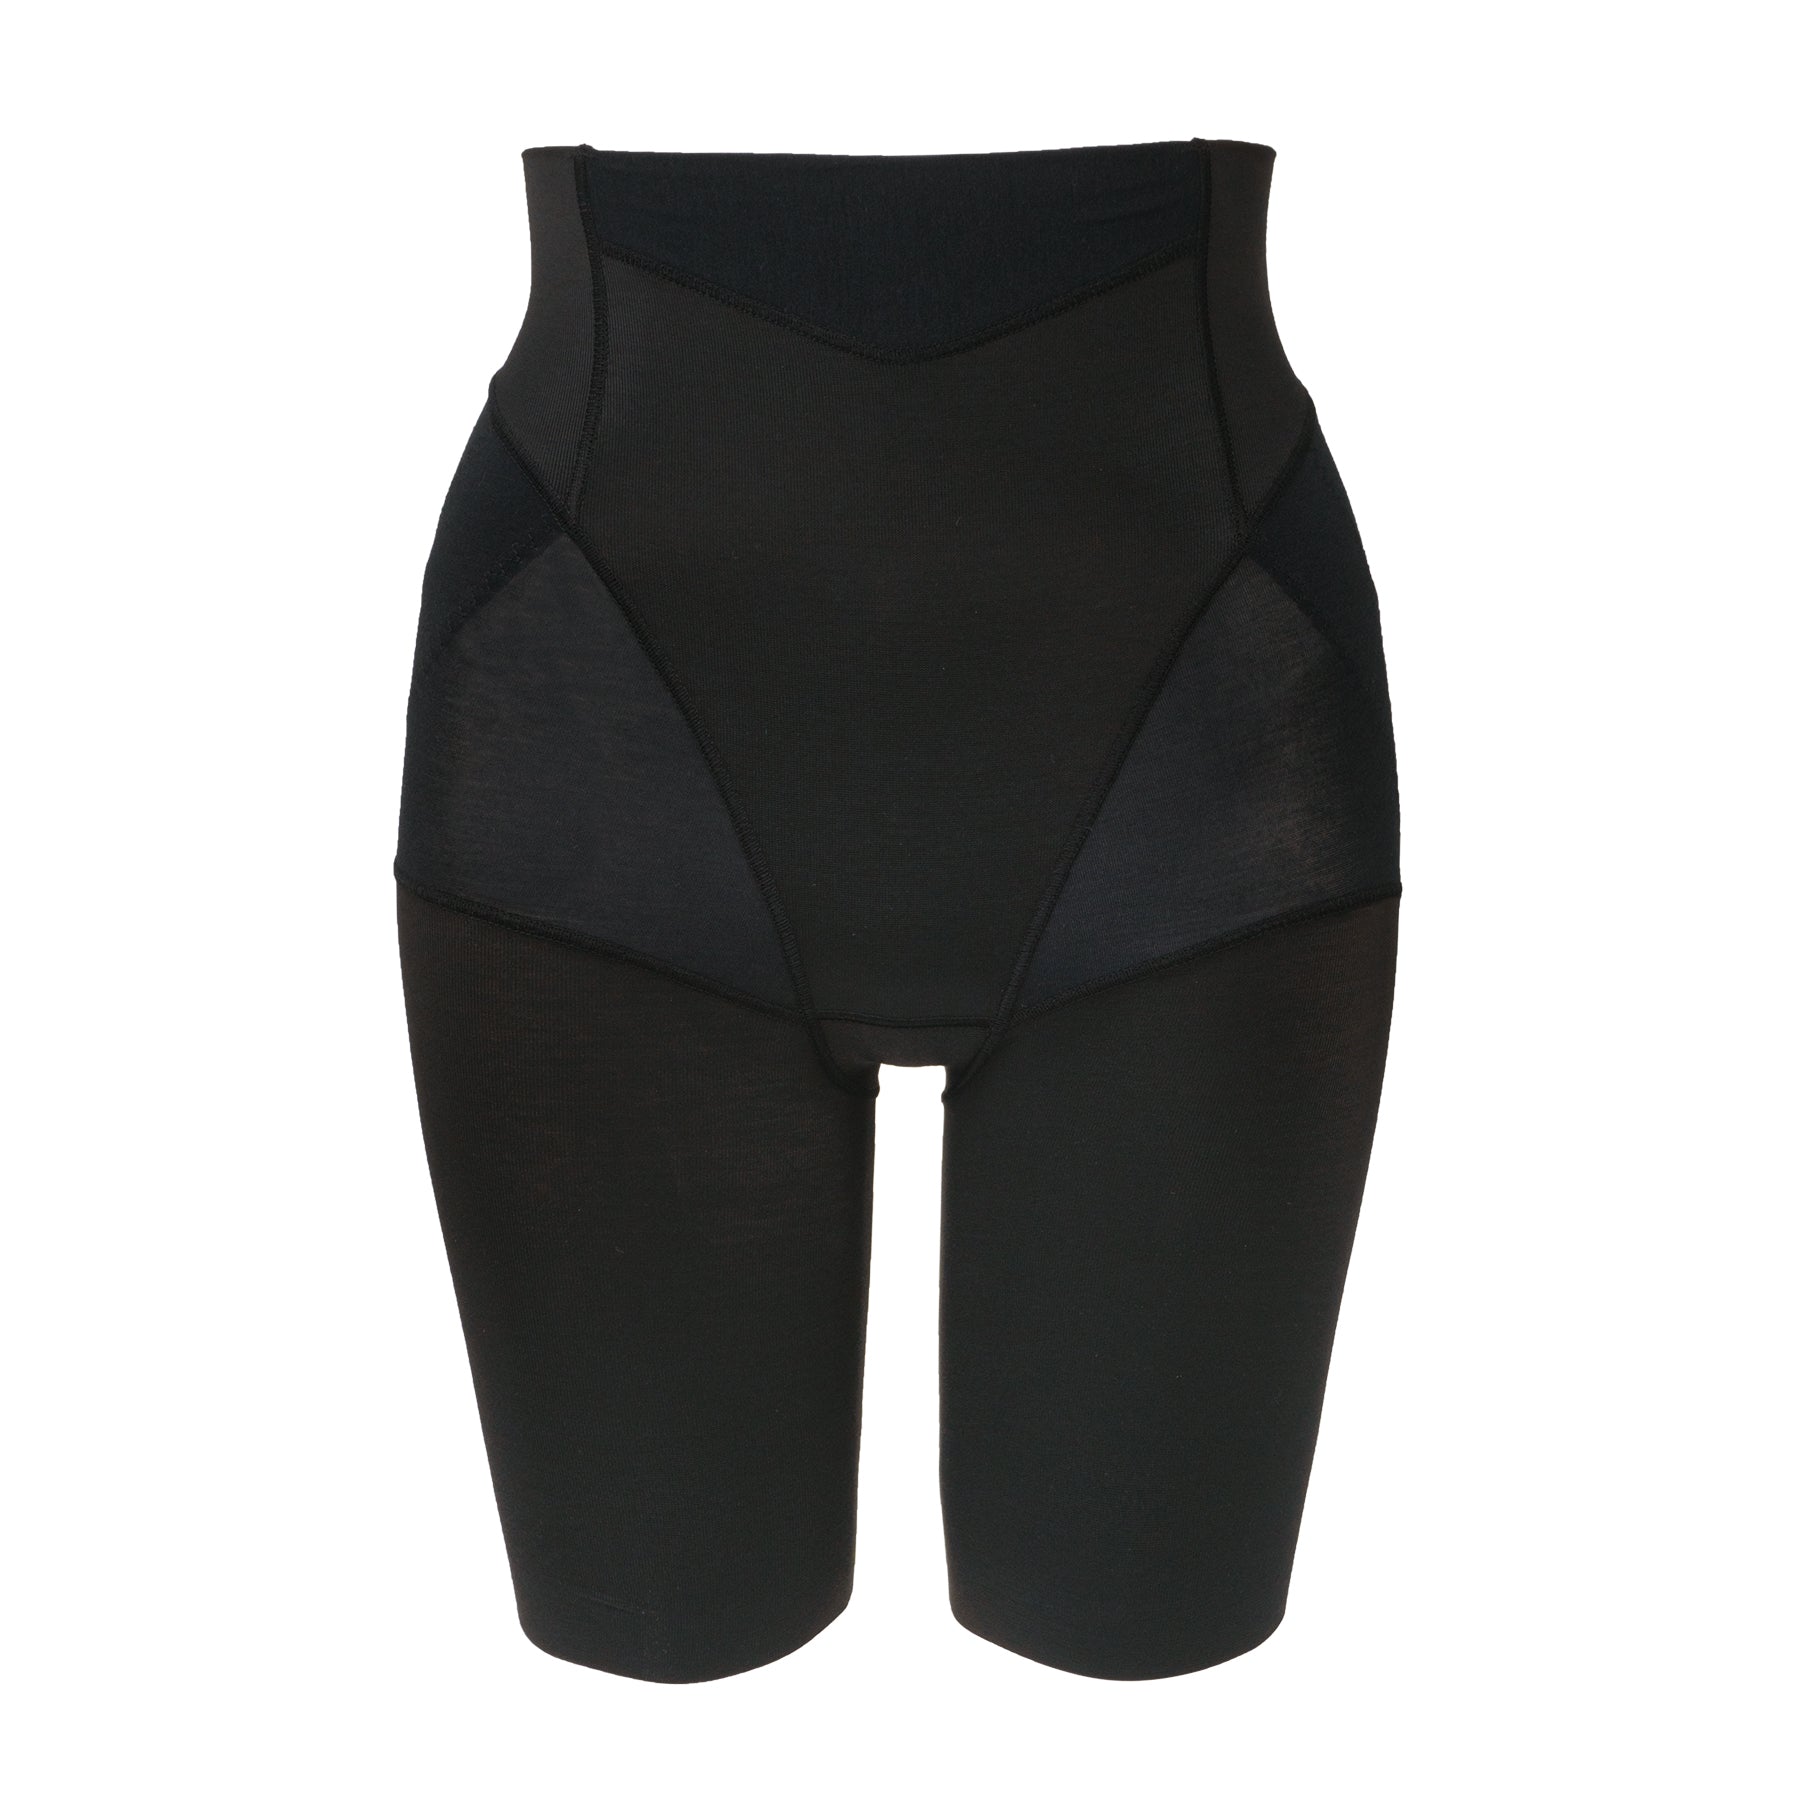 Control girdle for women black Bella Form model S210 – Conceptos